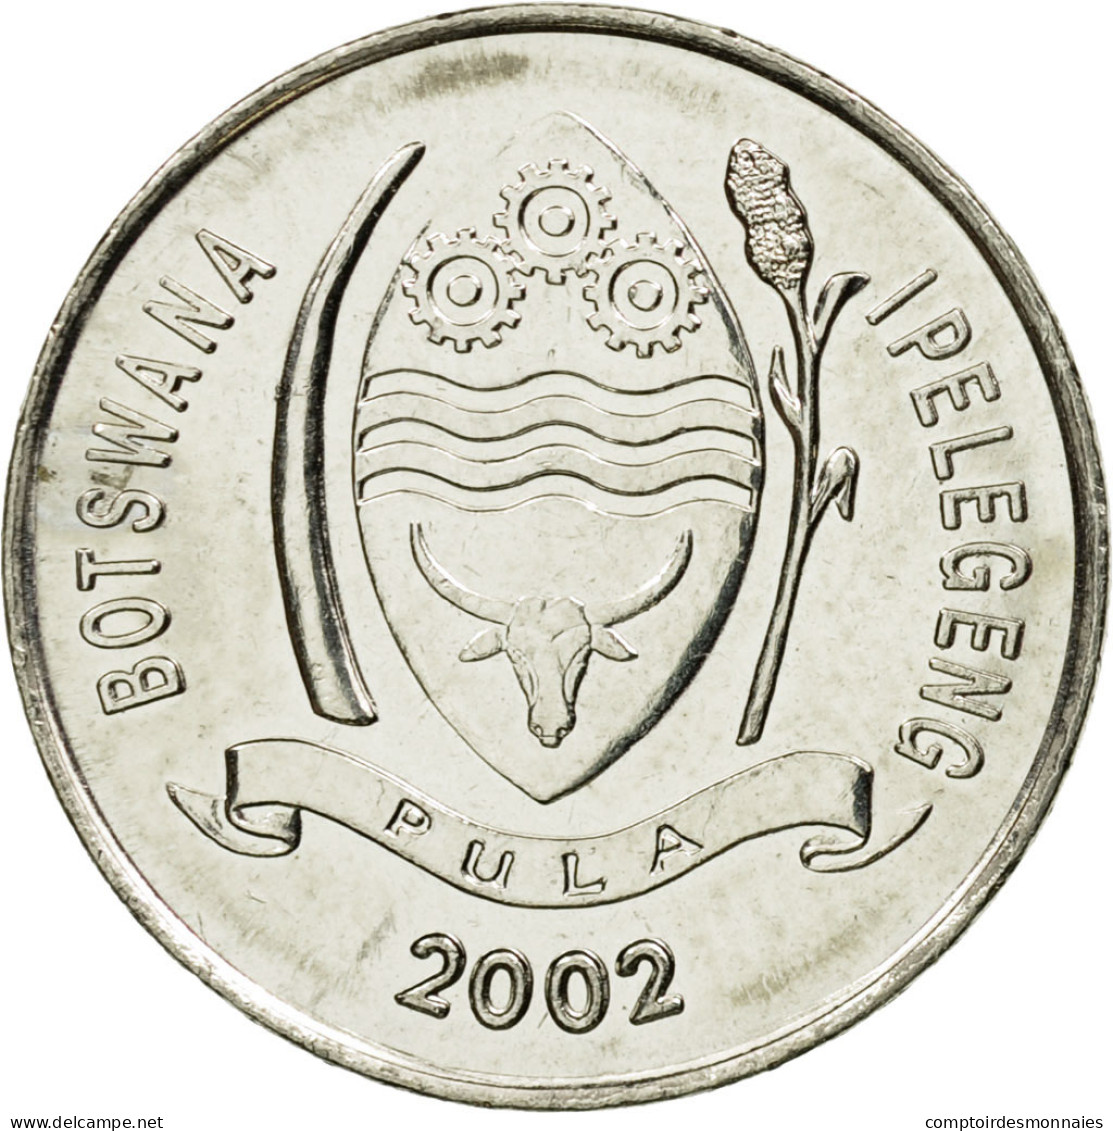 Monnaie, Botswana, 10 Thebe, 2002, British Royal Mint, TTB, Nickel Plated Steel - Botswana